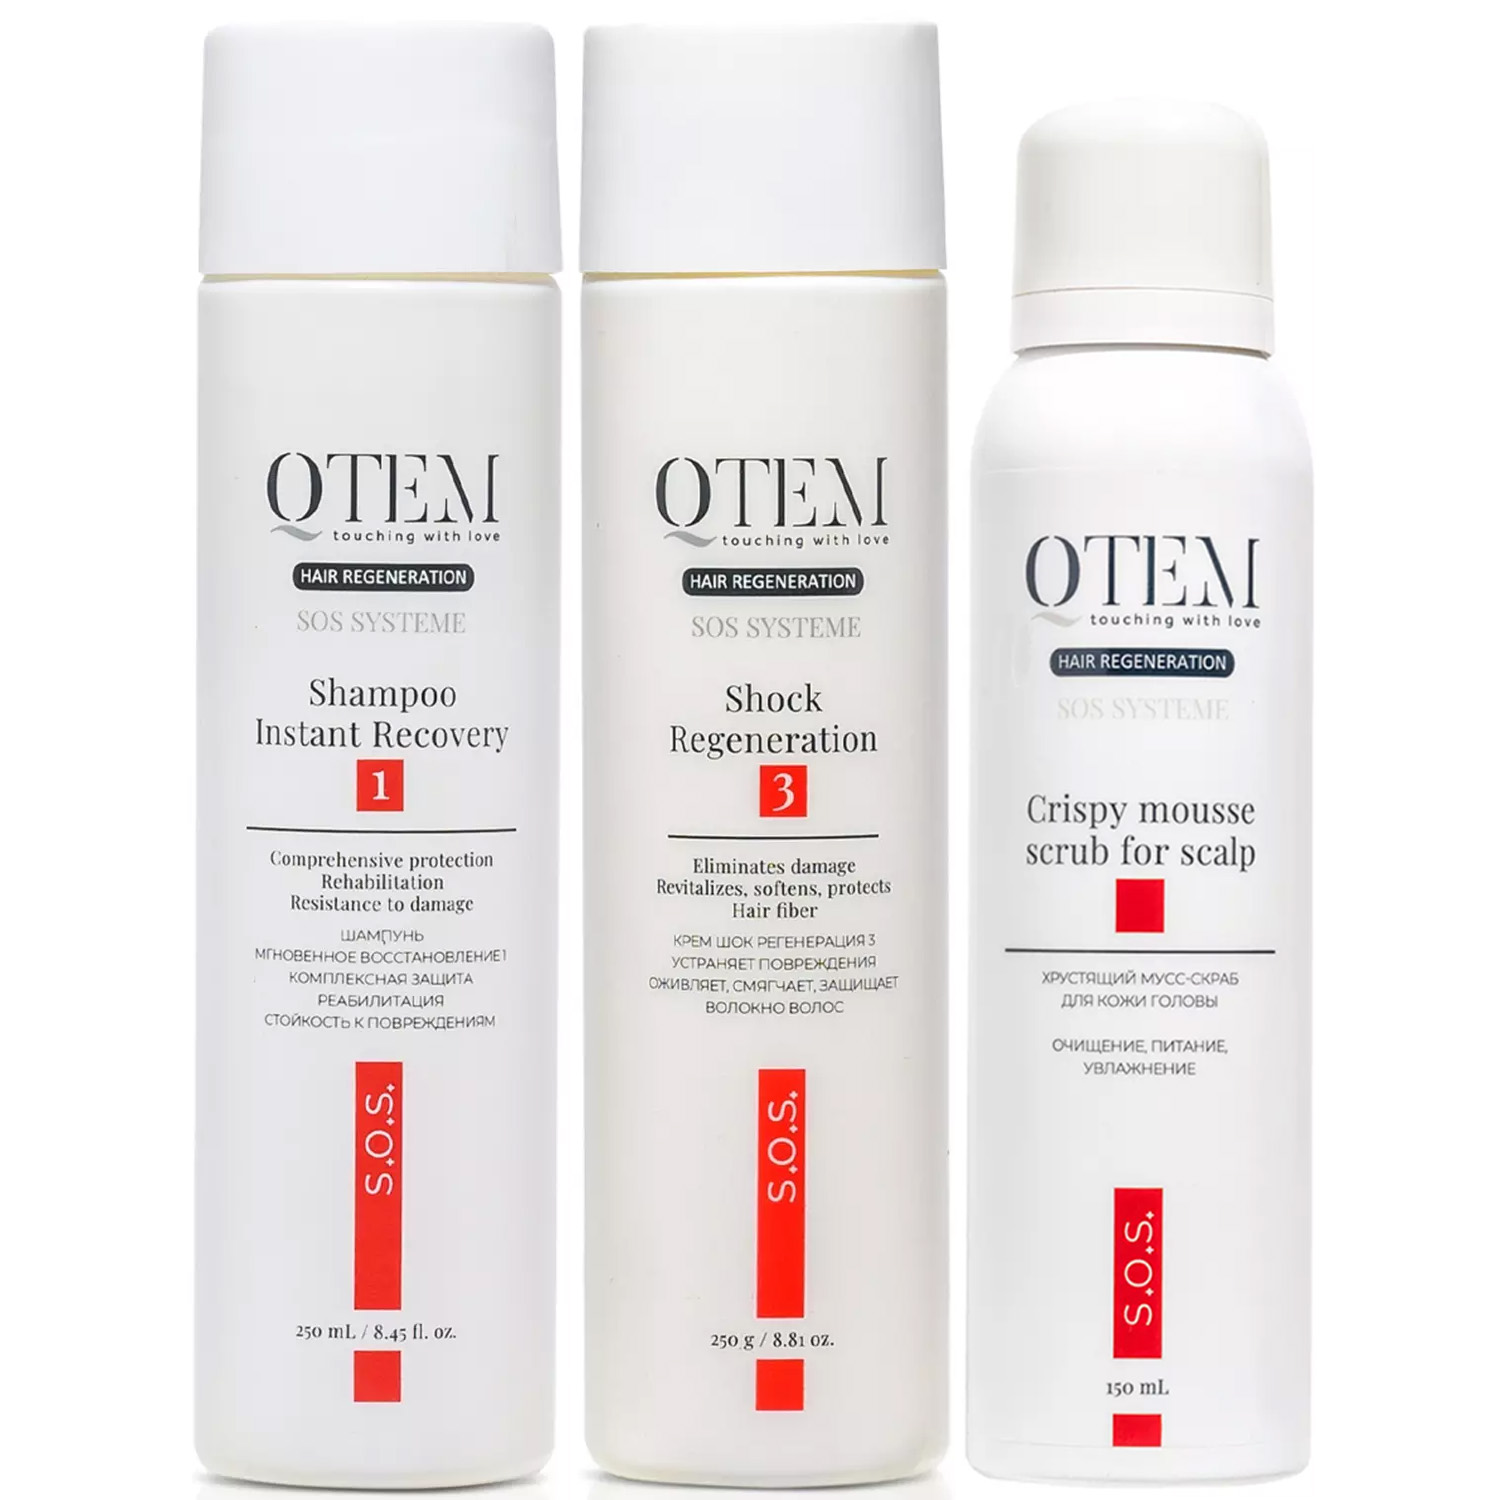 Qtem Набор для интенсивного восстановления волос: шампунь 250 мл + крем-маска 250 г + скраб 150 мл (Qtem, Hair Regeneration) qtem набор для восстановления волос шампунь 200 мл маска 200 мл qtem hair regeneration